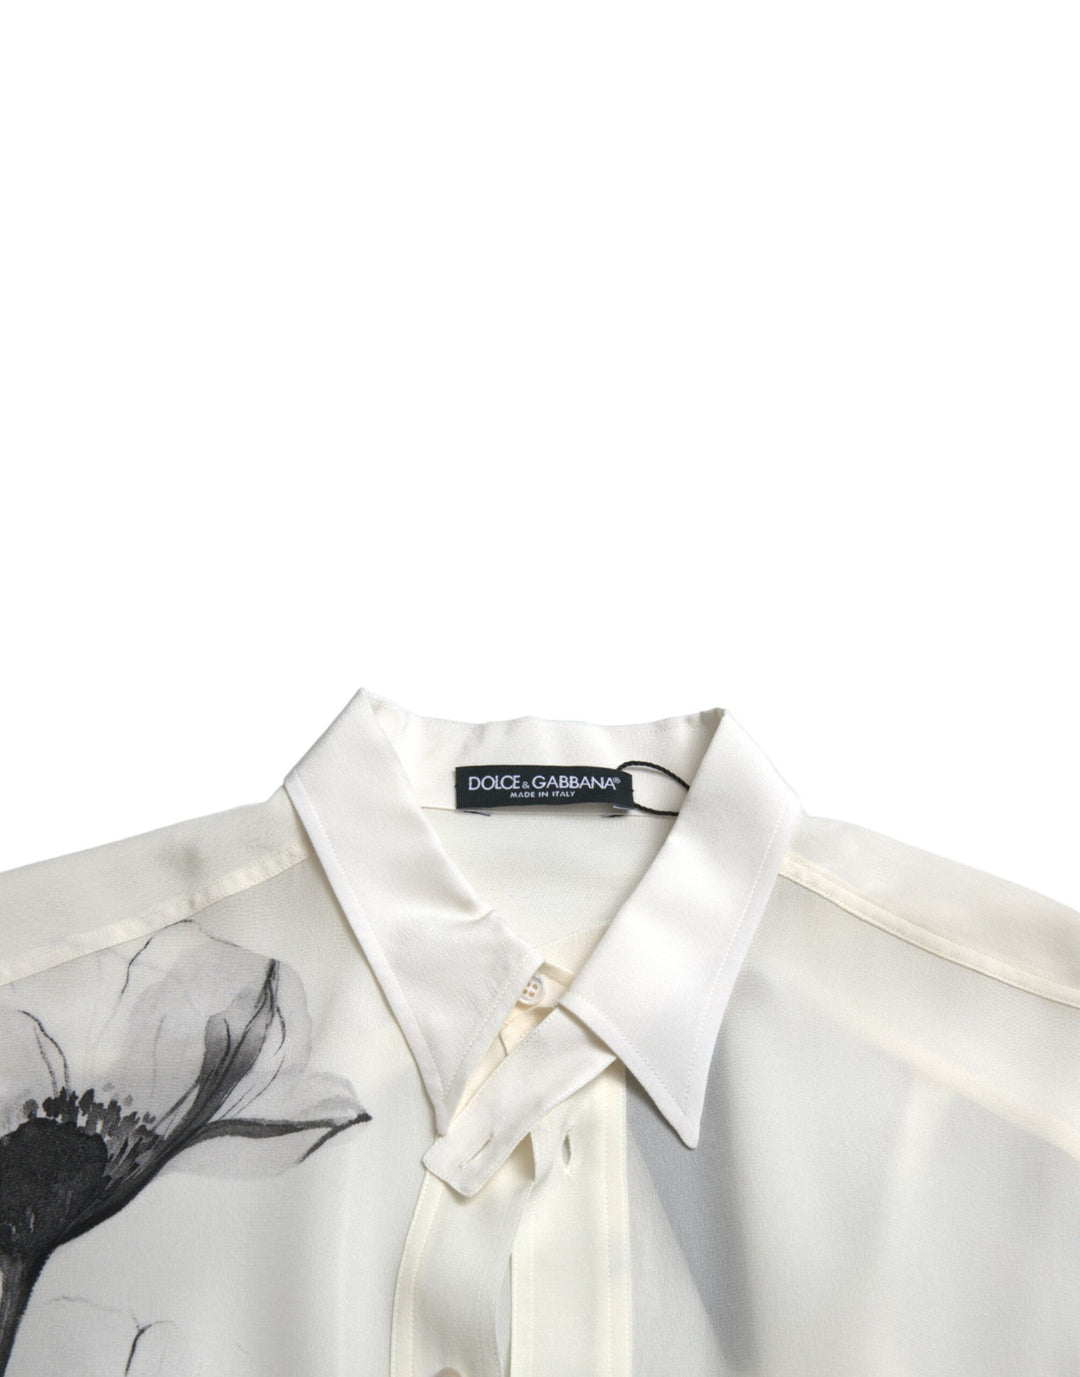 Dolce & Gabbana White Floral Collared Dress Silk Shirt